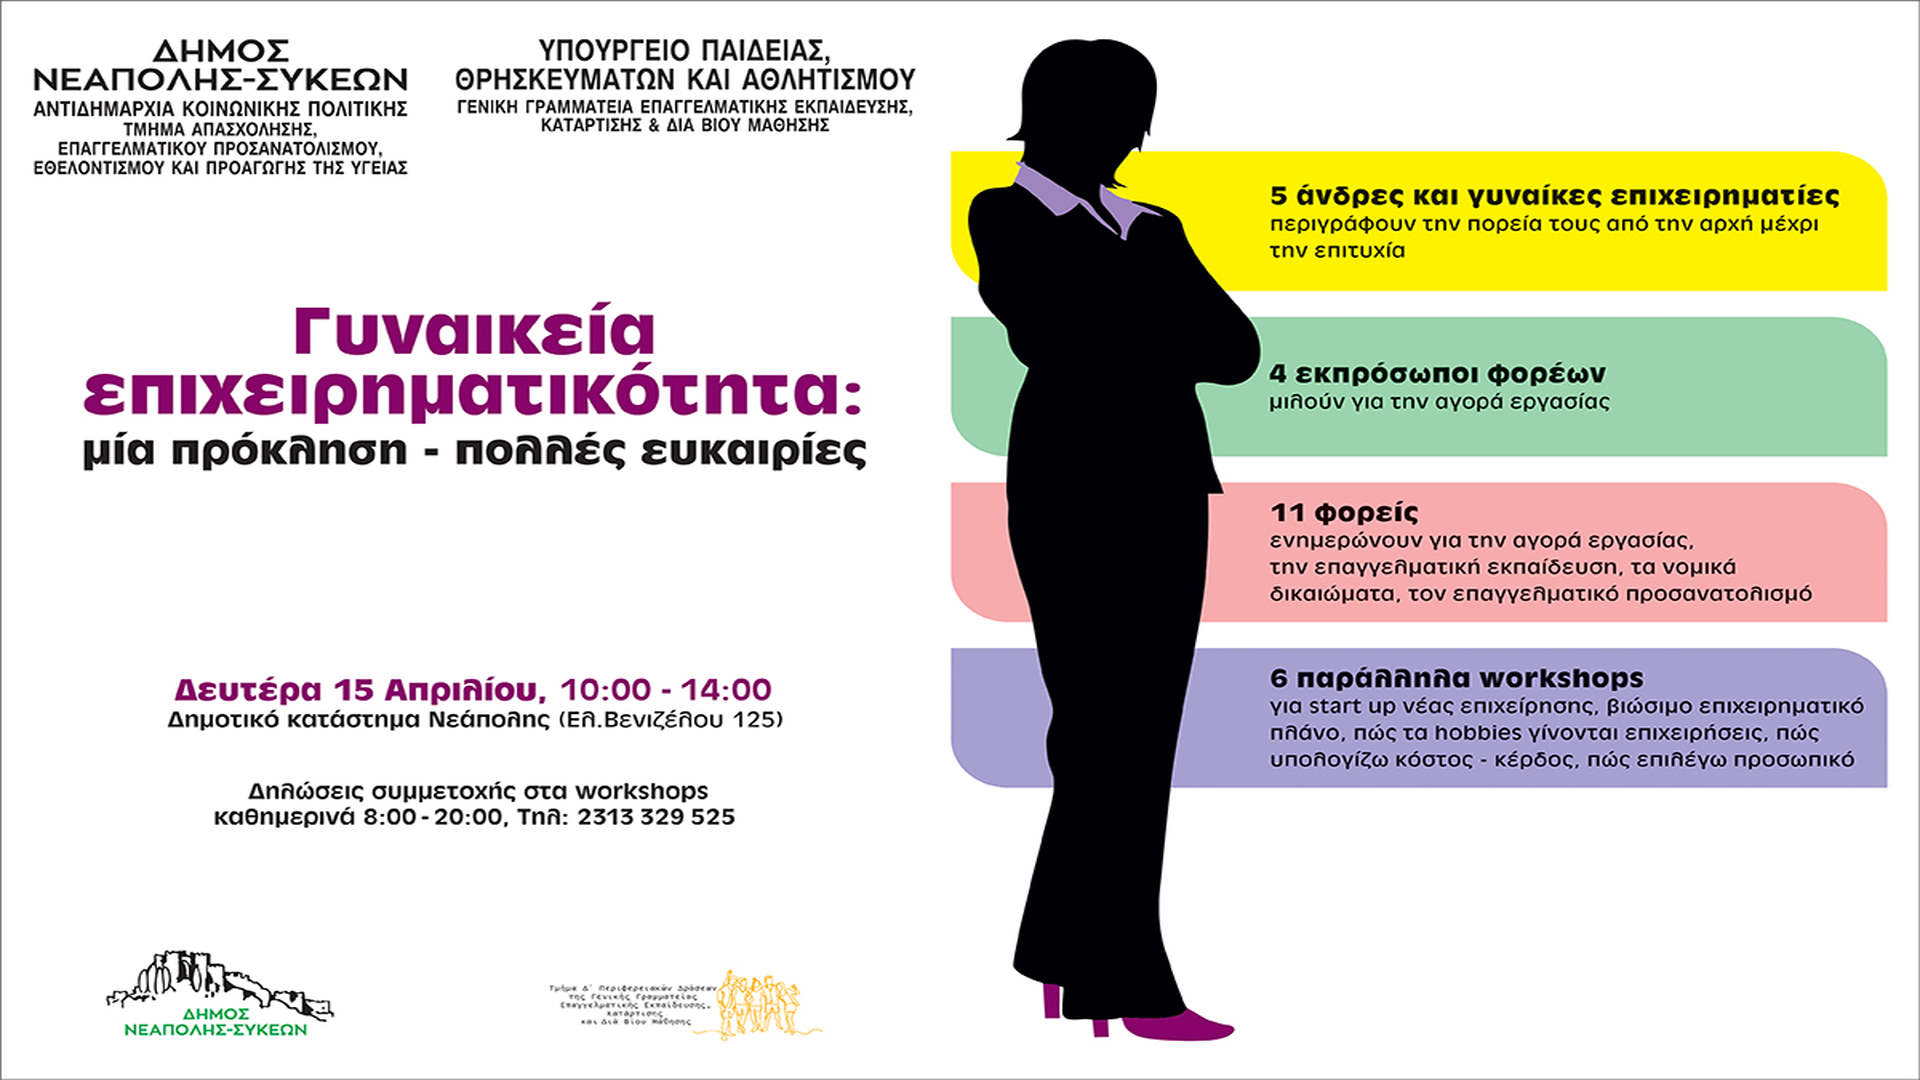 Τη Γυναικεία Επιχειρηματικότητα ως πρόκληση  με πολλές ευκαιρίες θέτει στο επίκεντρο  ο δήμος Νεάπολης-Συκεών